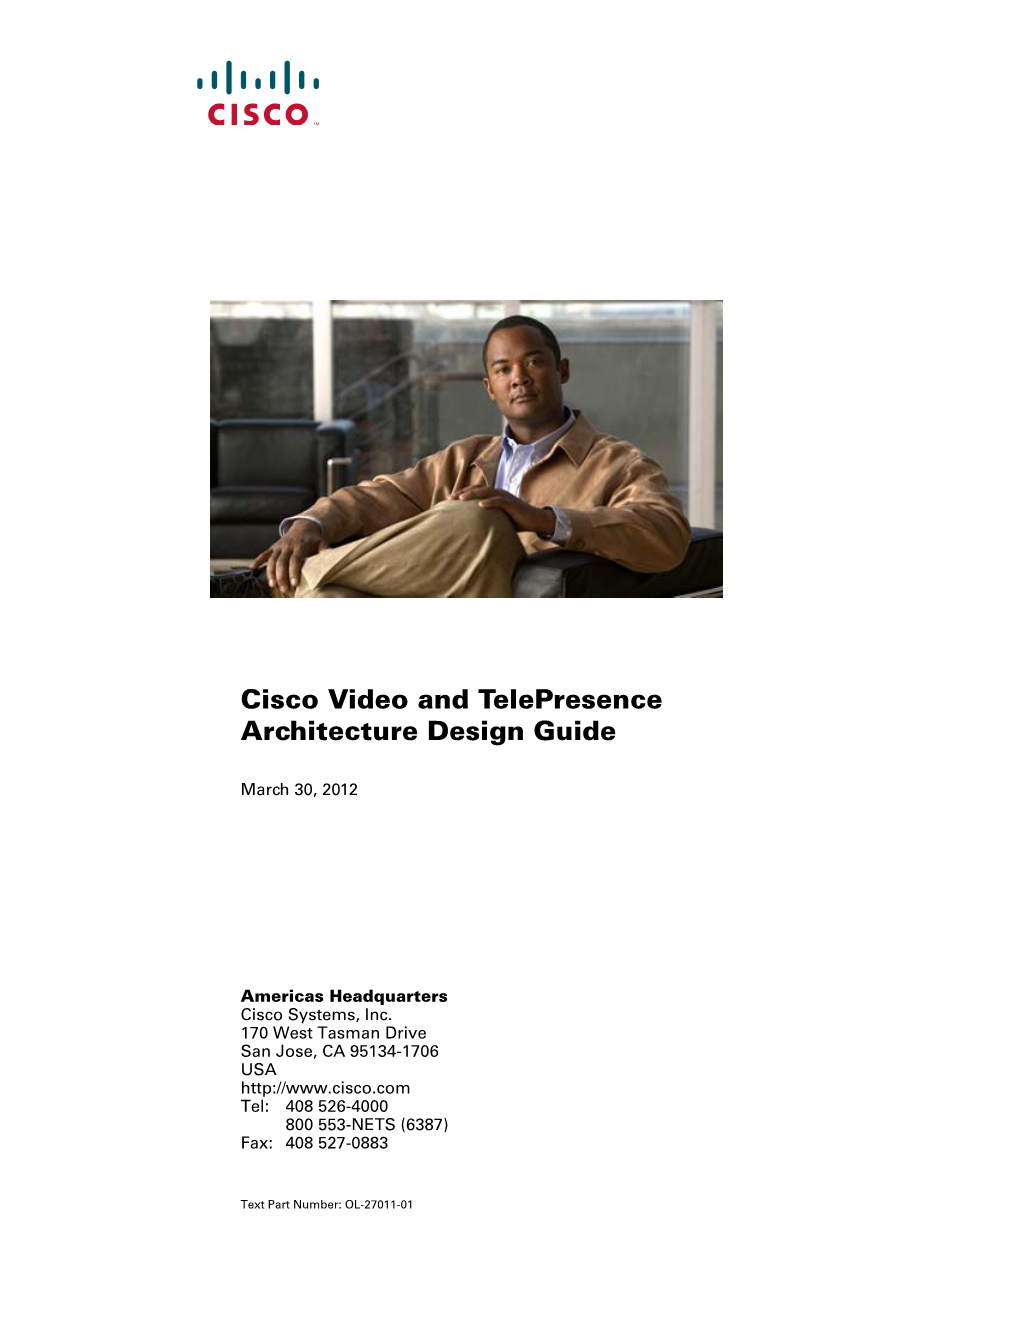 Cisco Video and Telepresence Architecture Design Guide